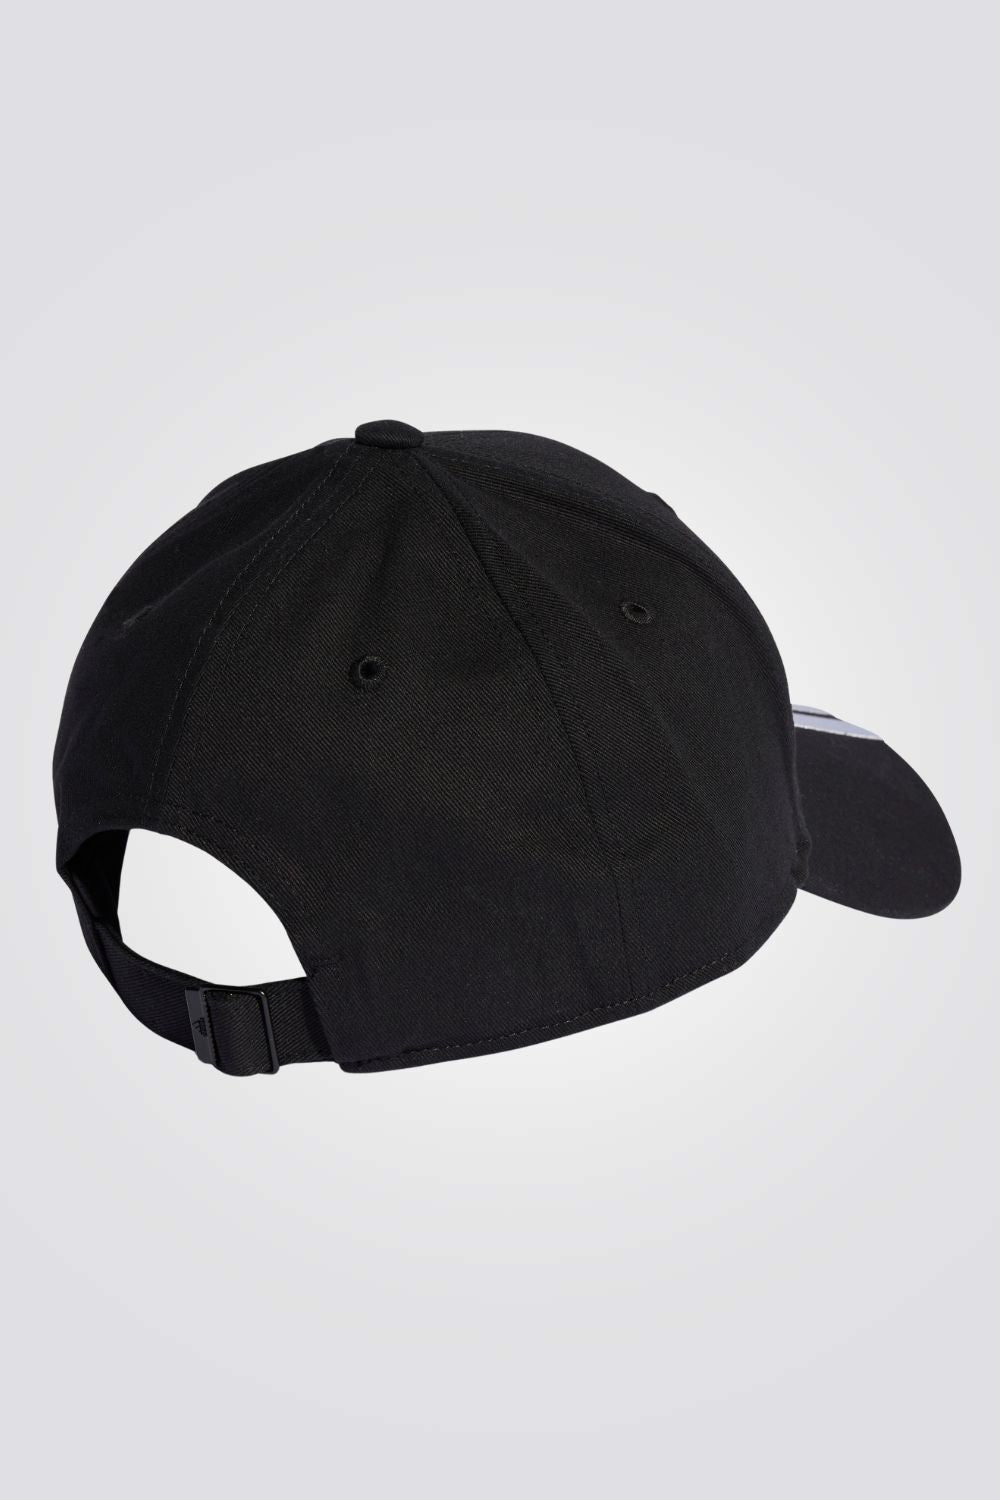 כובע מבית המותג ADIDAS, בעל רצועה אחורית מתכוננת להתאמה מושלמת